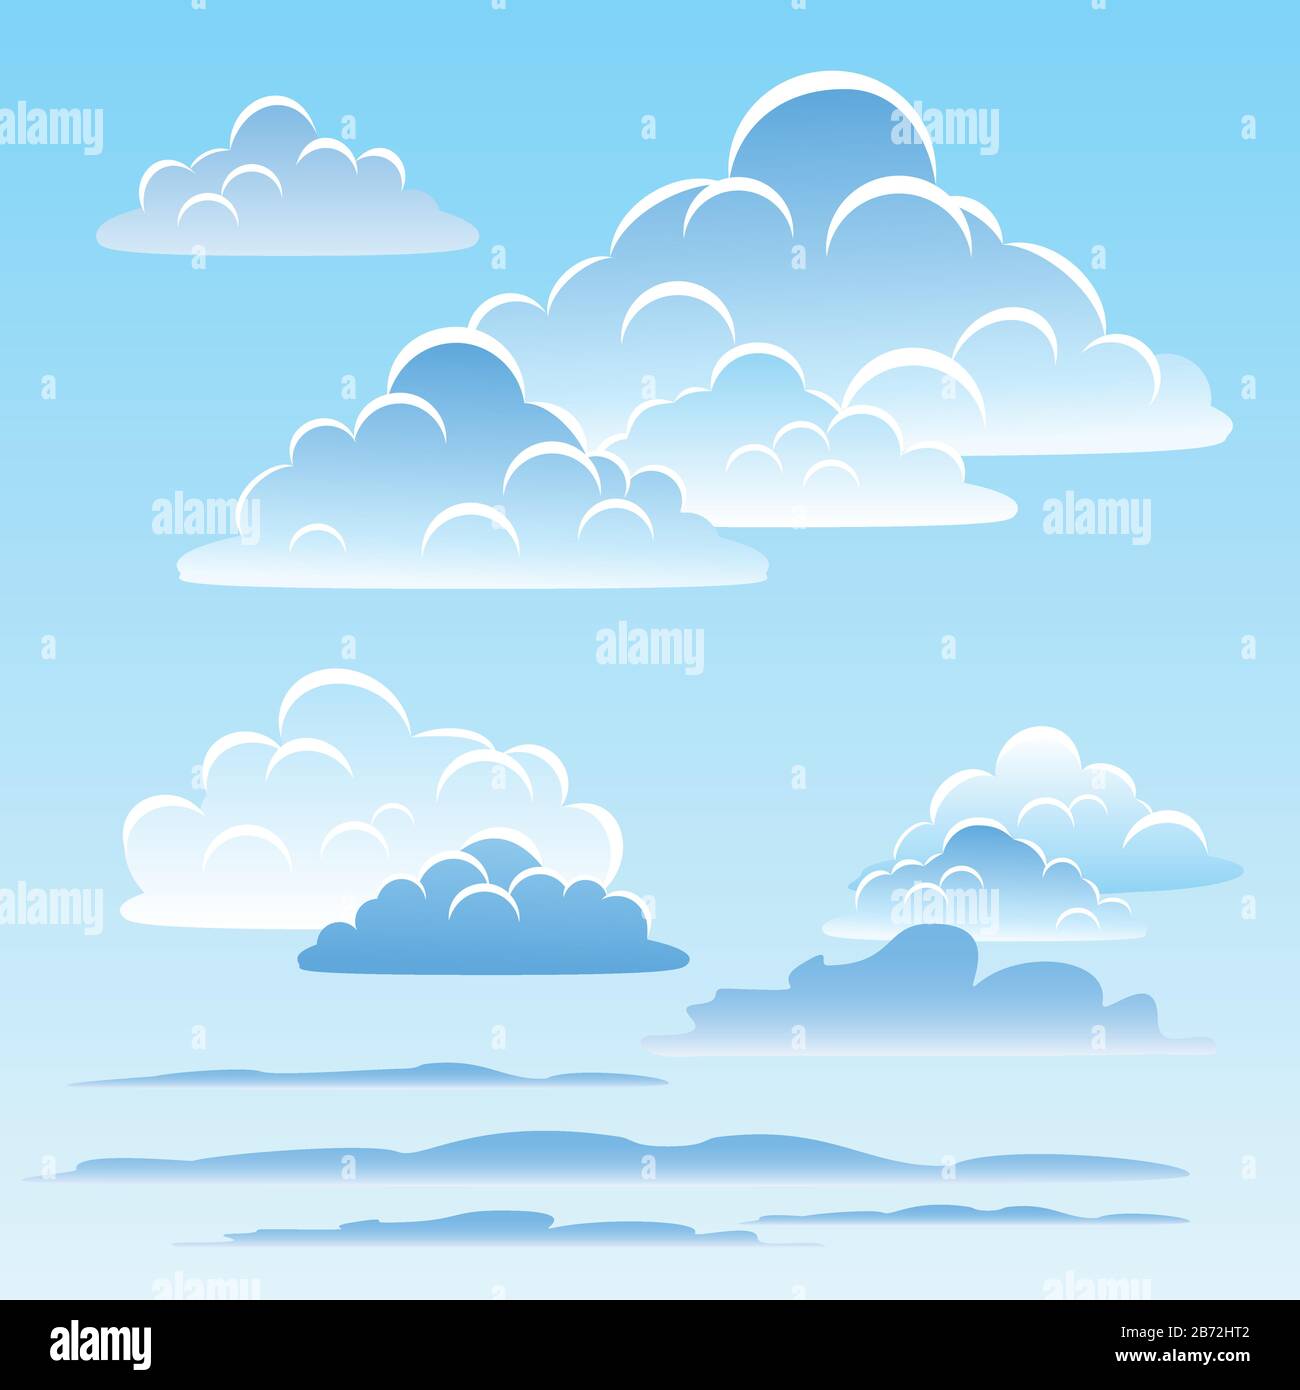 Weißer cumulus Wolken auf blauem Himmel. EPS-Datei. Vektorgrafiken. Stock Vektor